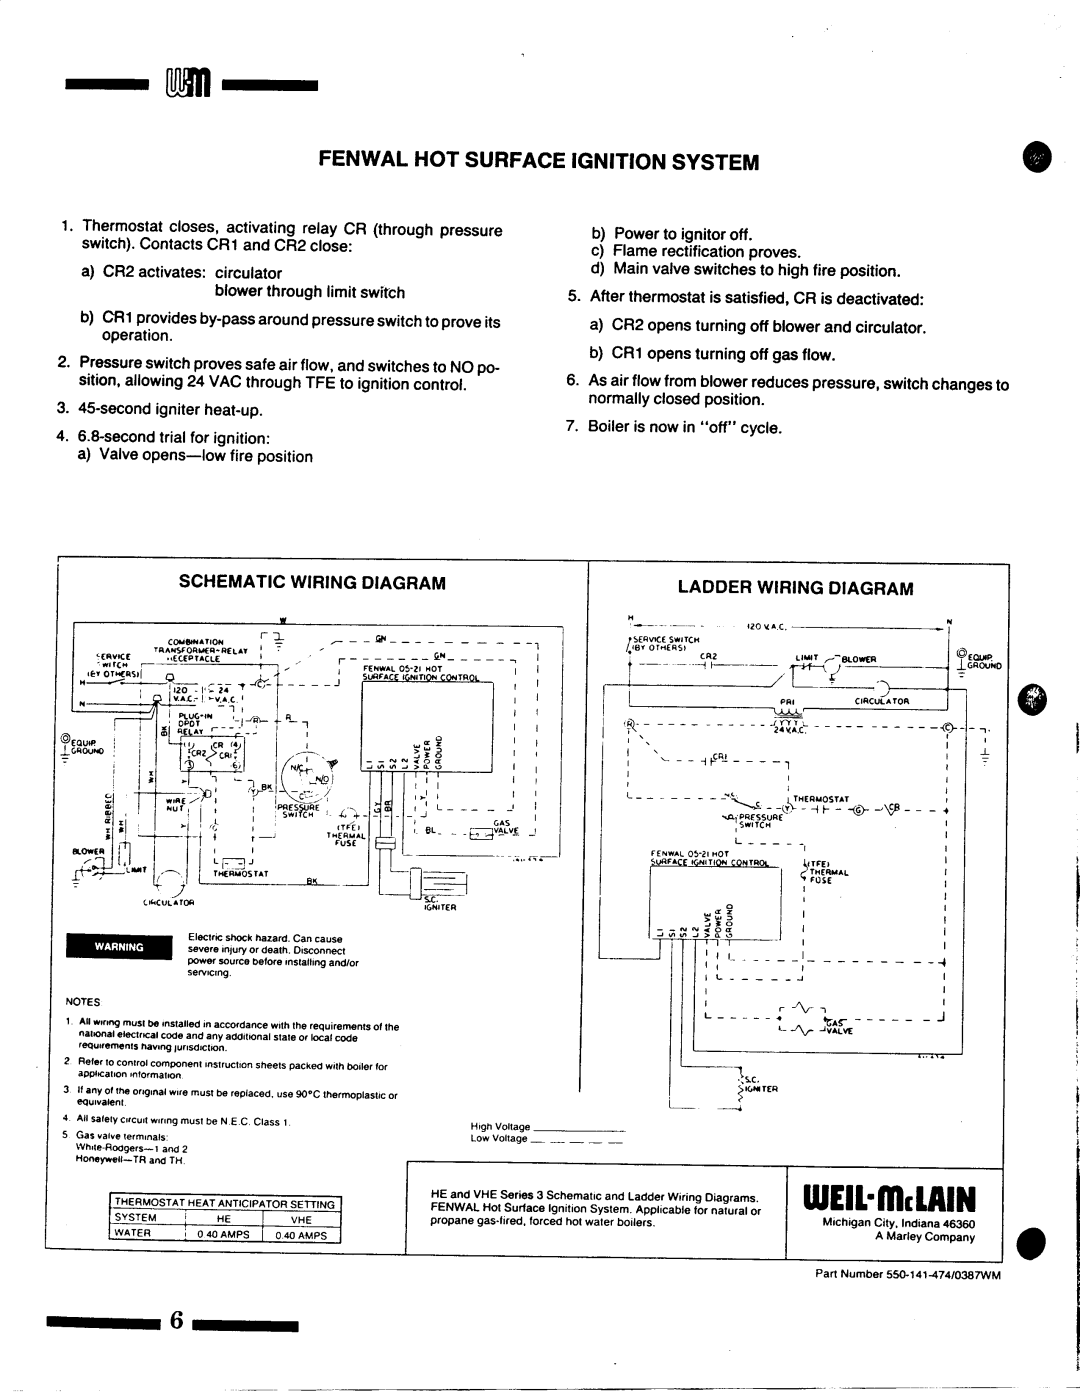 Weil-McLain VHE Series 3 manual 